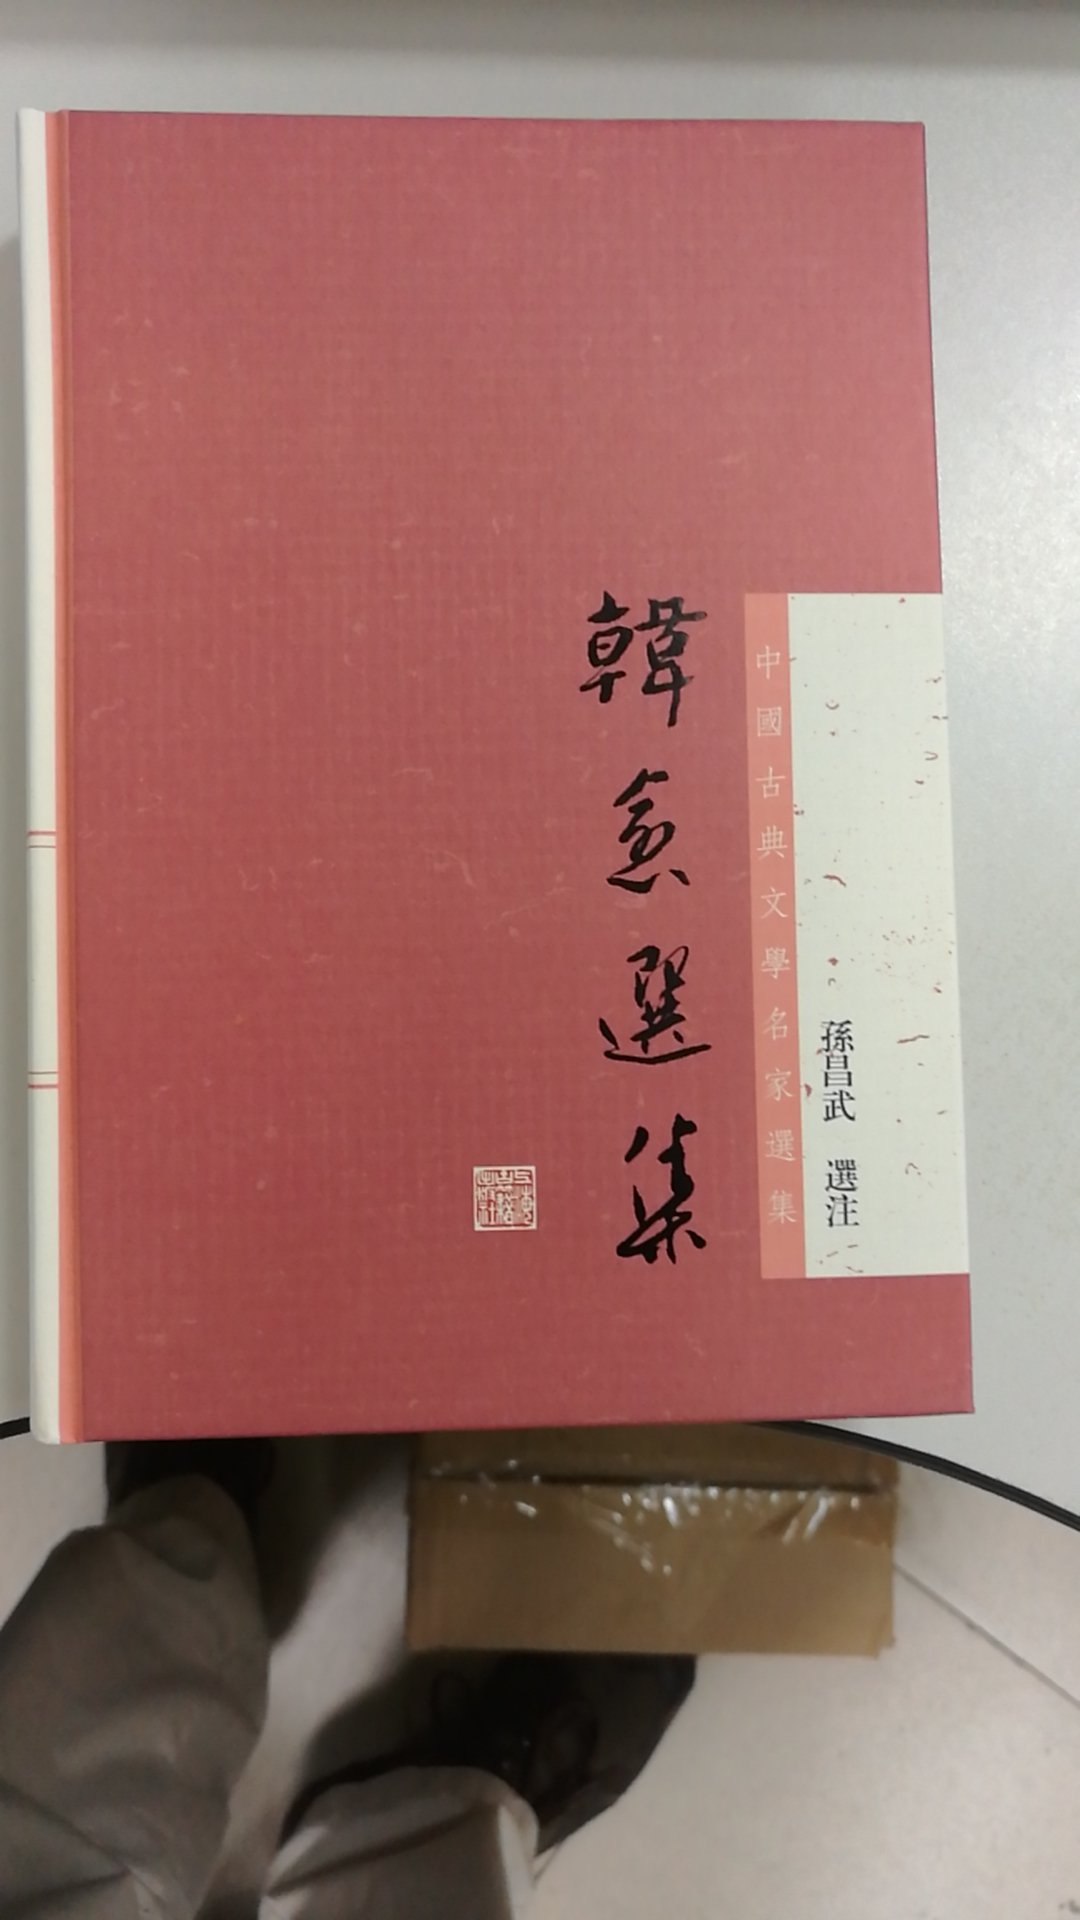 上海古籍出版社的这个系列和中华书局的类似系列，纸质和排版都较好，繁体横排，适合有意愿的读者选读。